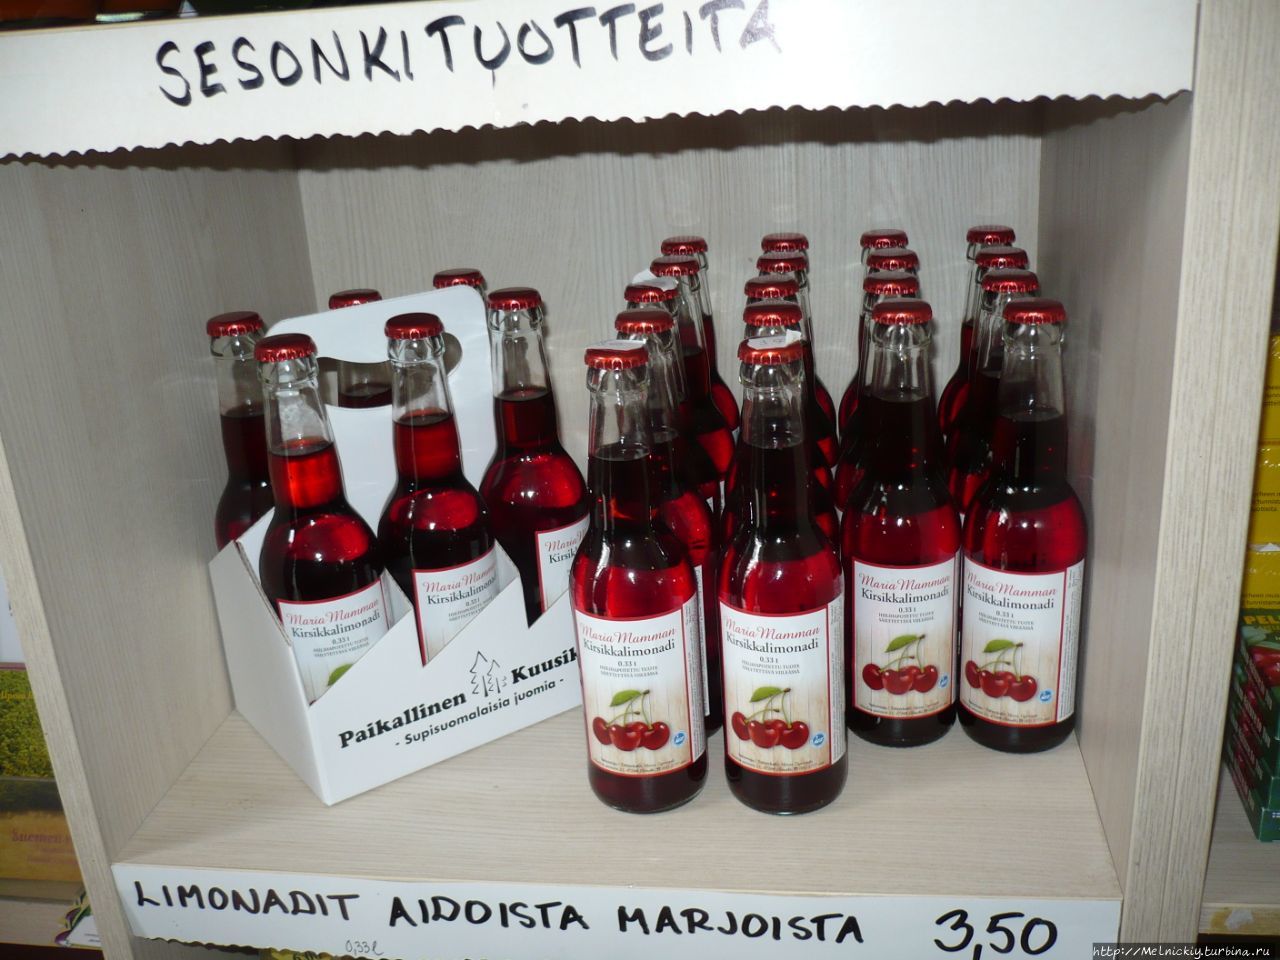 Винодельня «Мустила Виини» Элимяки, Финляндия